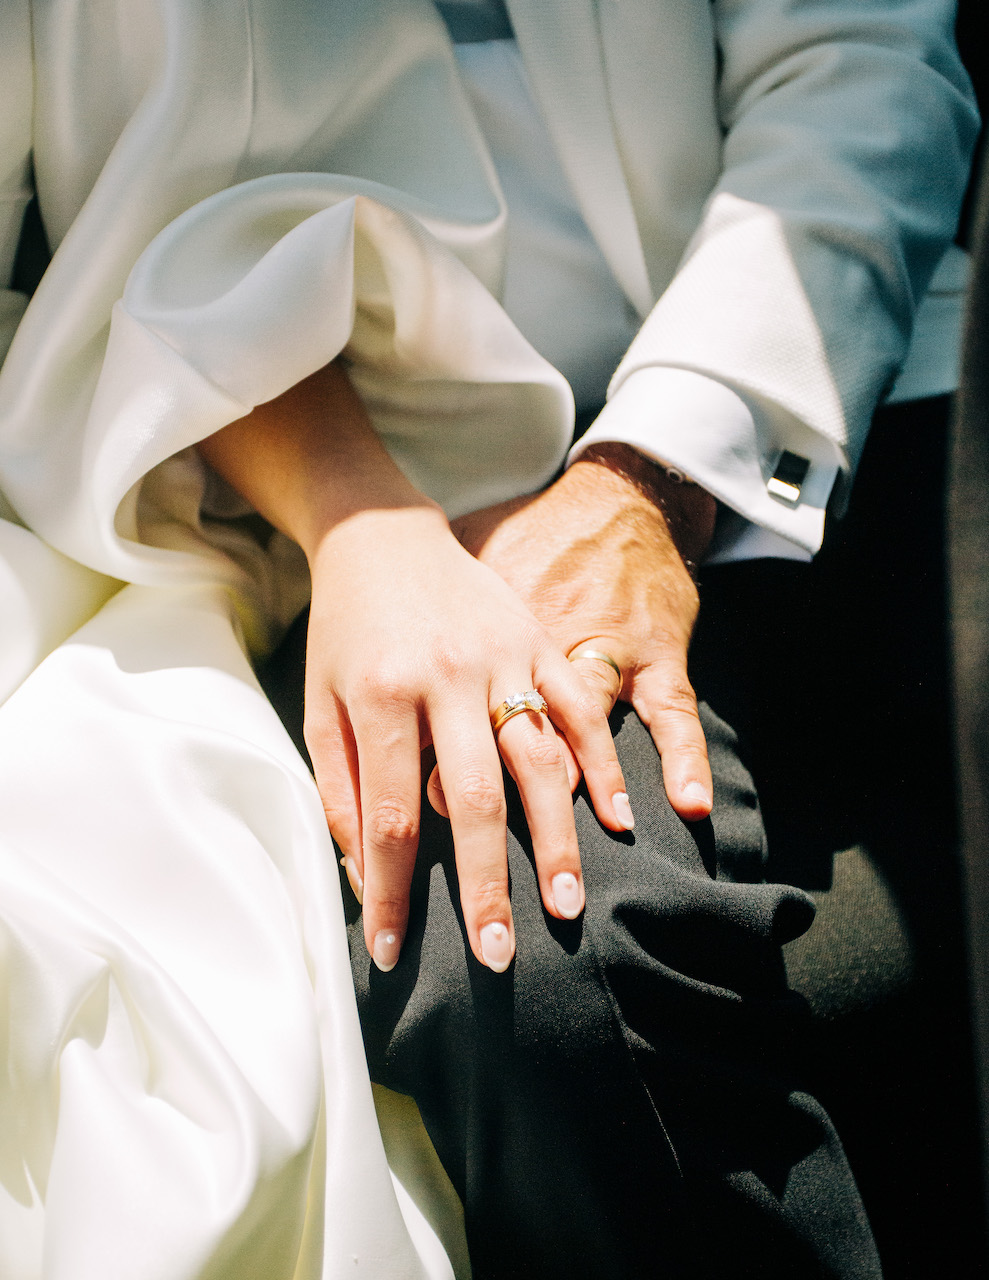 bride and groom wedding rings 